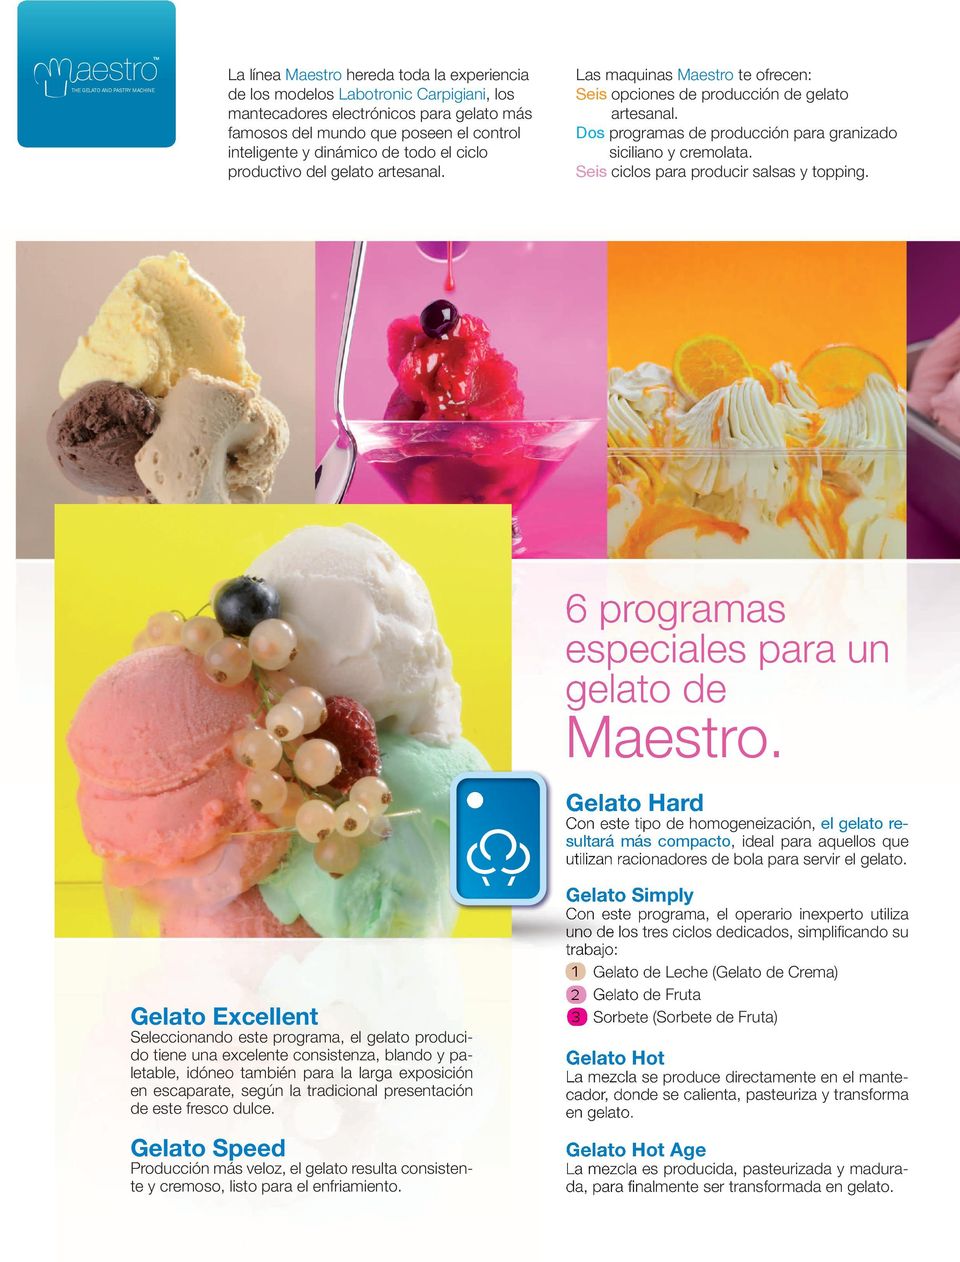 Dos programas de producción para granizado siciliano y cremolata. Seis ciclos para producir salsas y topping. 6 programas especiales para un gelato de Maestro.